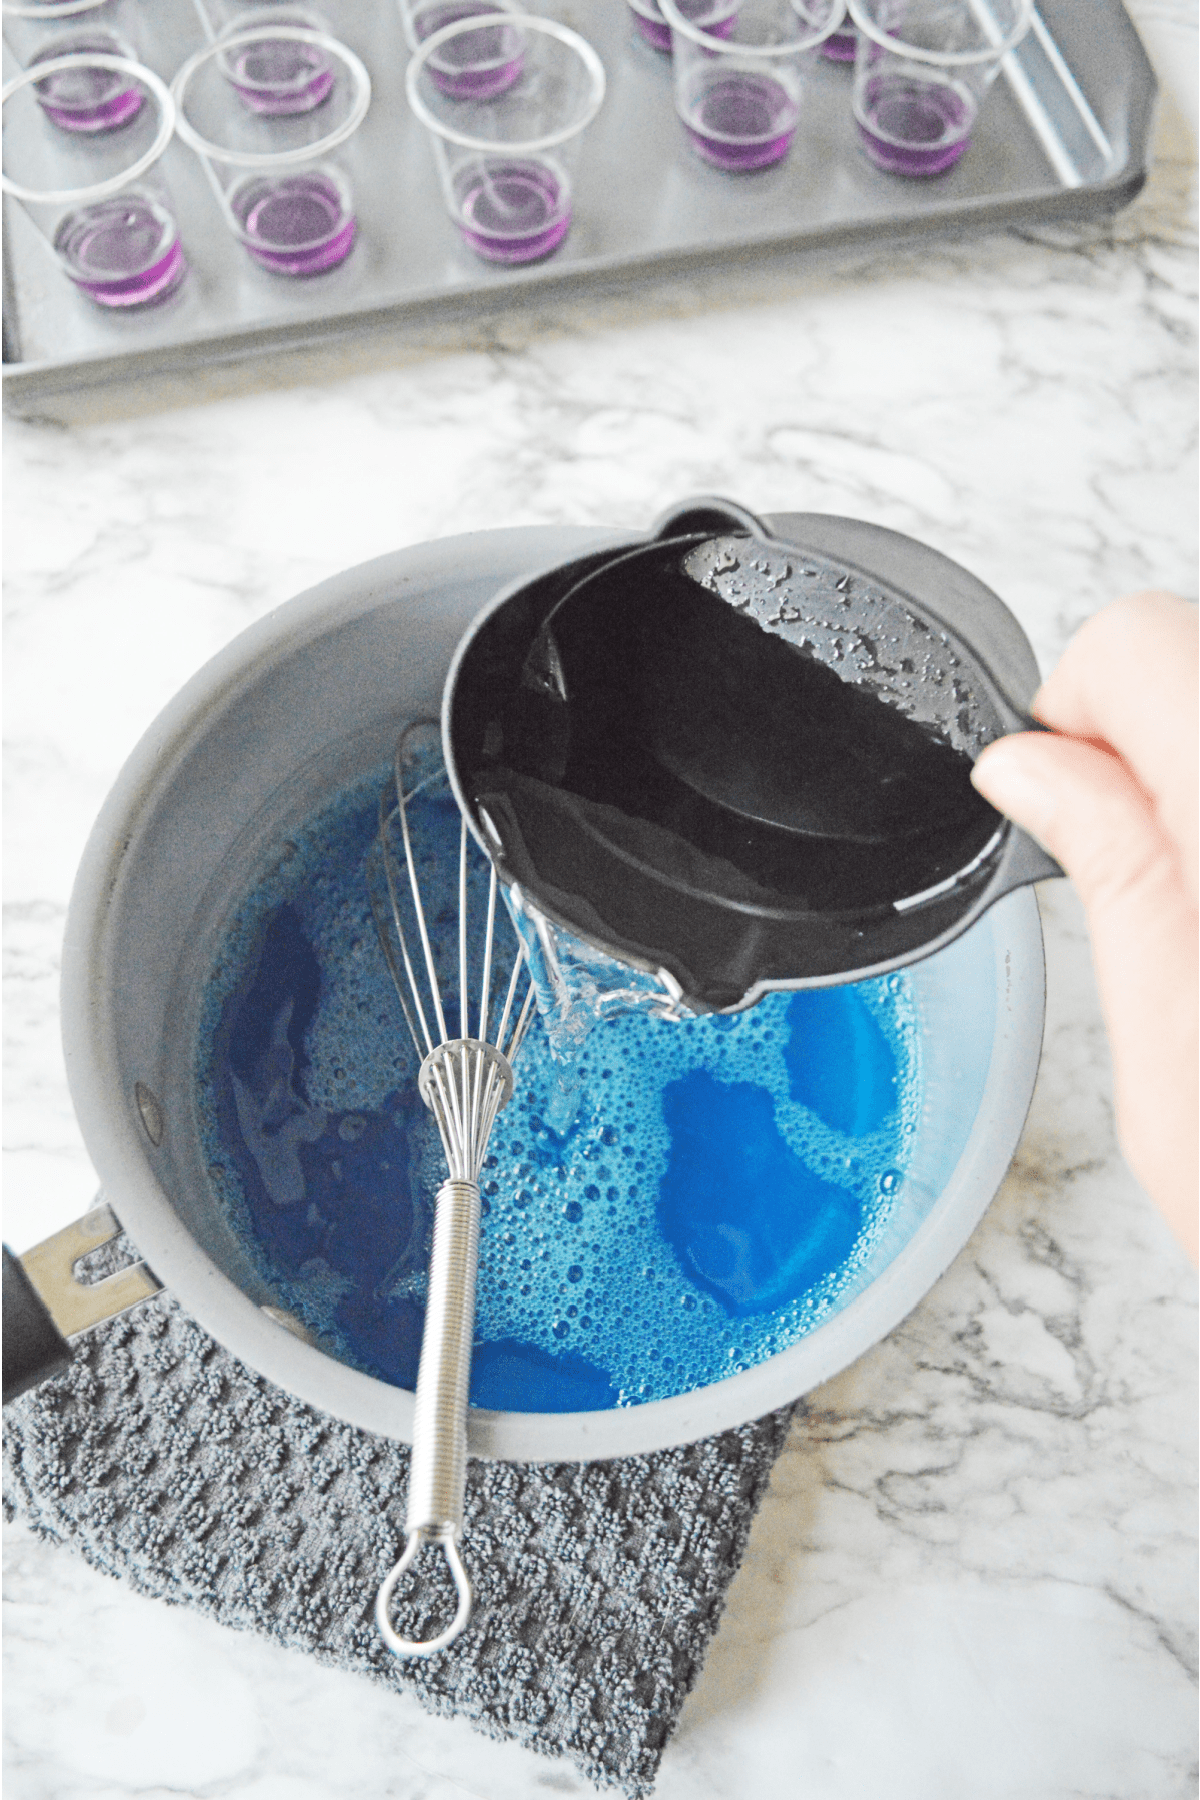 Adding more water to blue jello